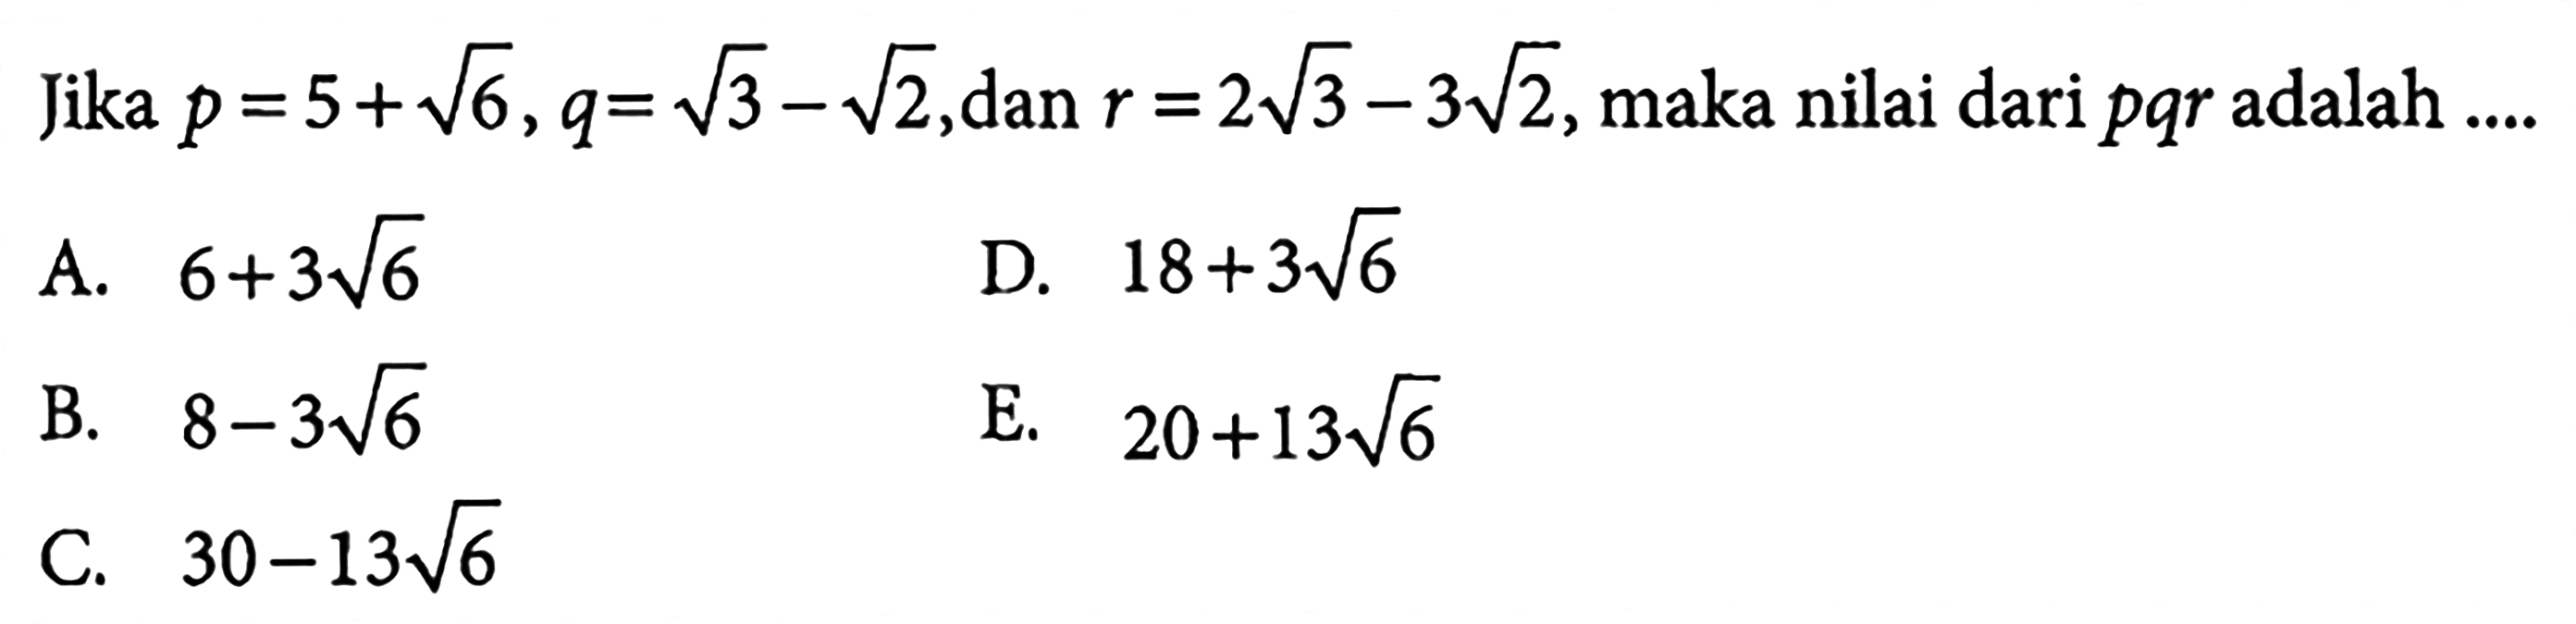 Jika p=5+ akar(6), q=akar(3)-akar(2), dan r=2akar(3)-3 akar(2), maka nilai dari pqr adlah ...